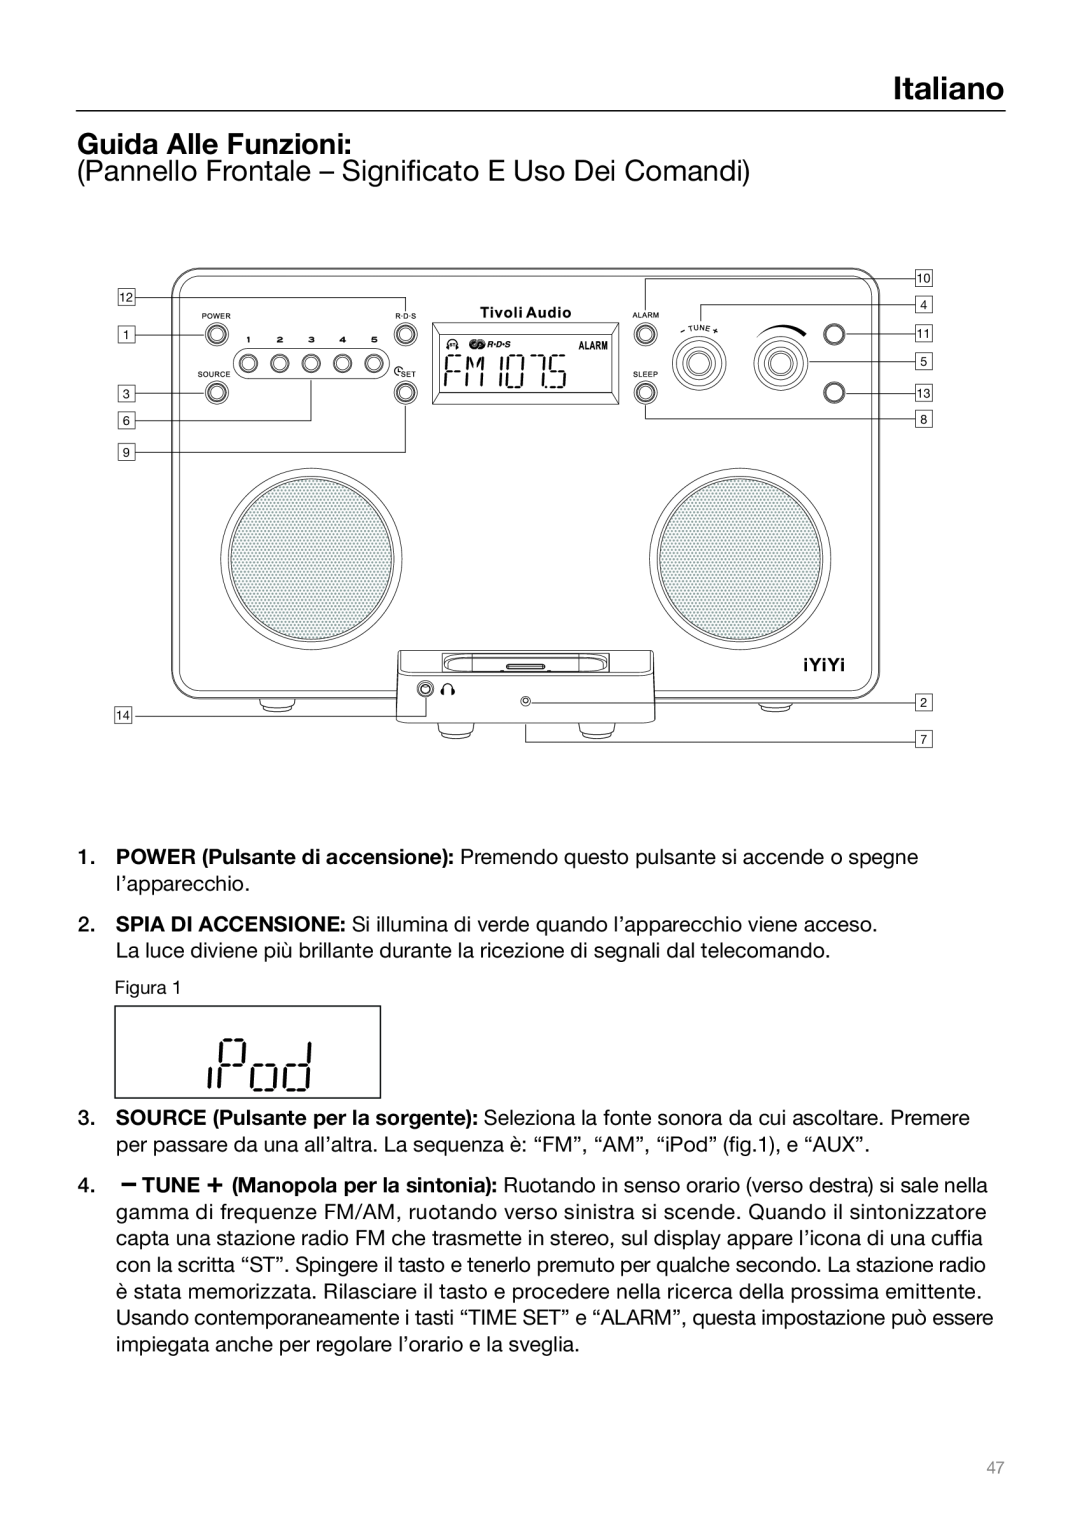 Tivoli Audio Sound System owner manual Guida Alle Funzioni, Italiano, Pannello Frontale - Significato E Uso Dei Comandi 